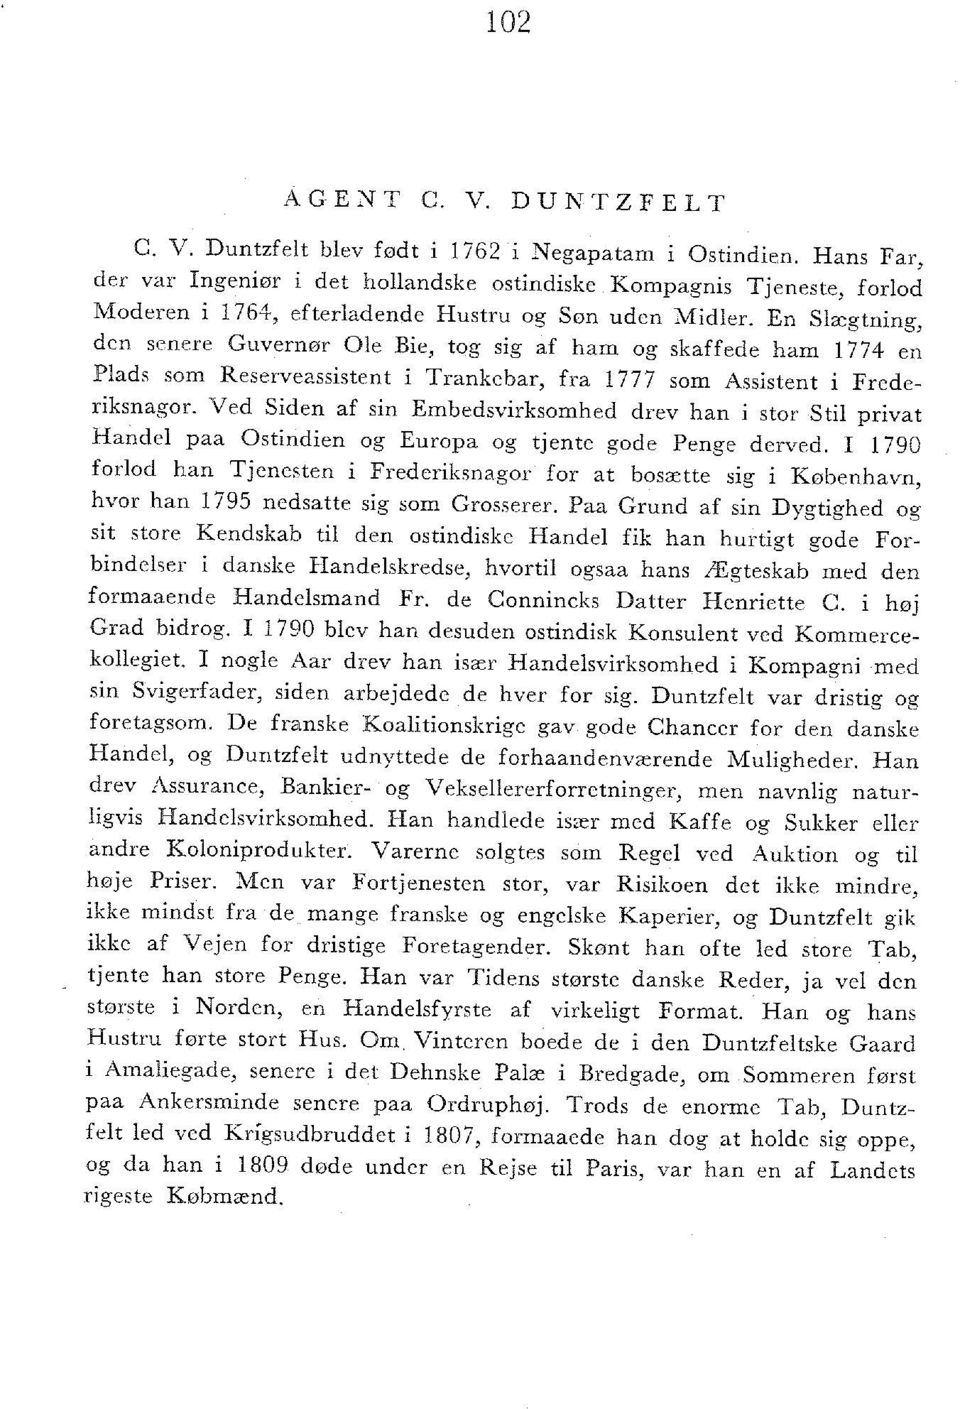 En Slægtning, den senere Guvernør Ole Bie, tog sig af ham og skaffede ham 1774 en Plads som Reserveassistent i Trankebar, fra 1777 som Assistent i Frederiksnagor.